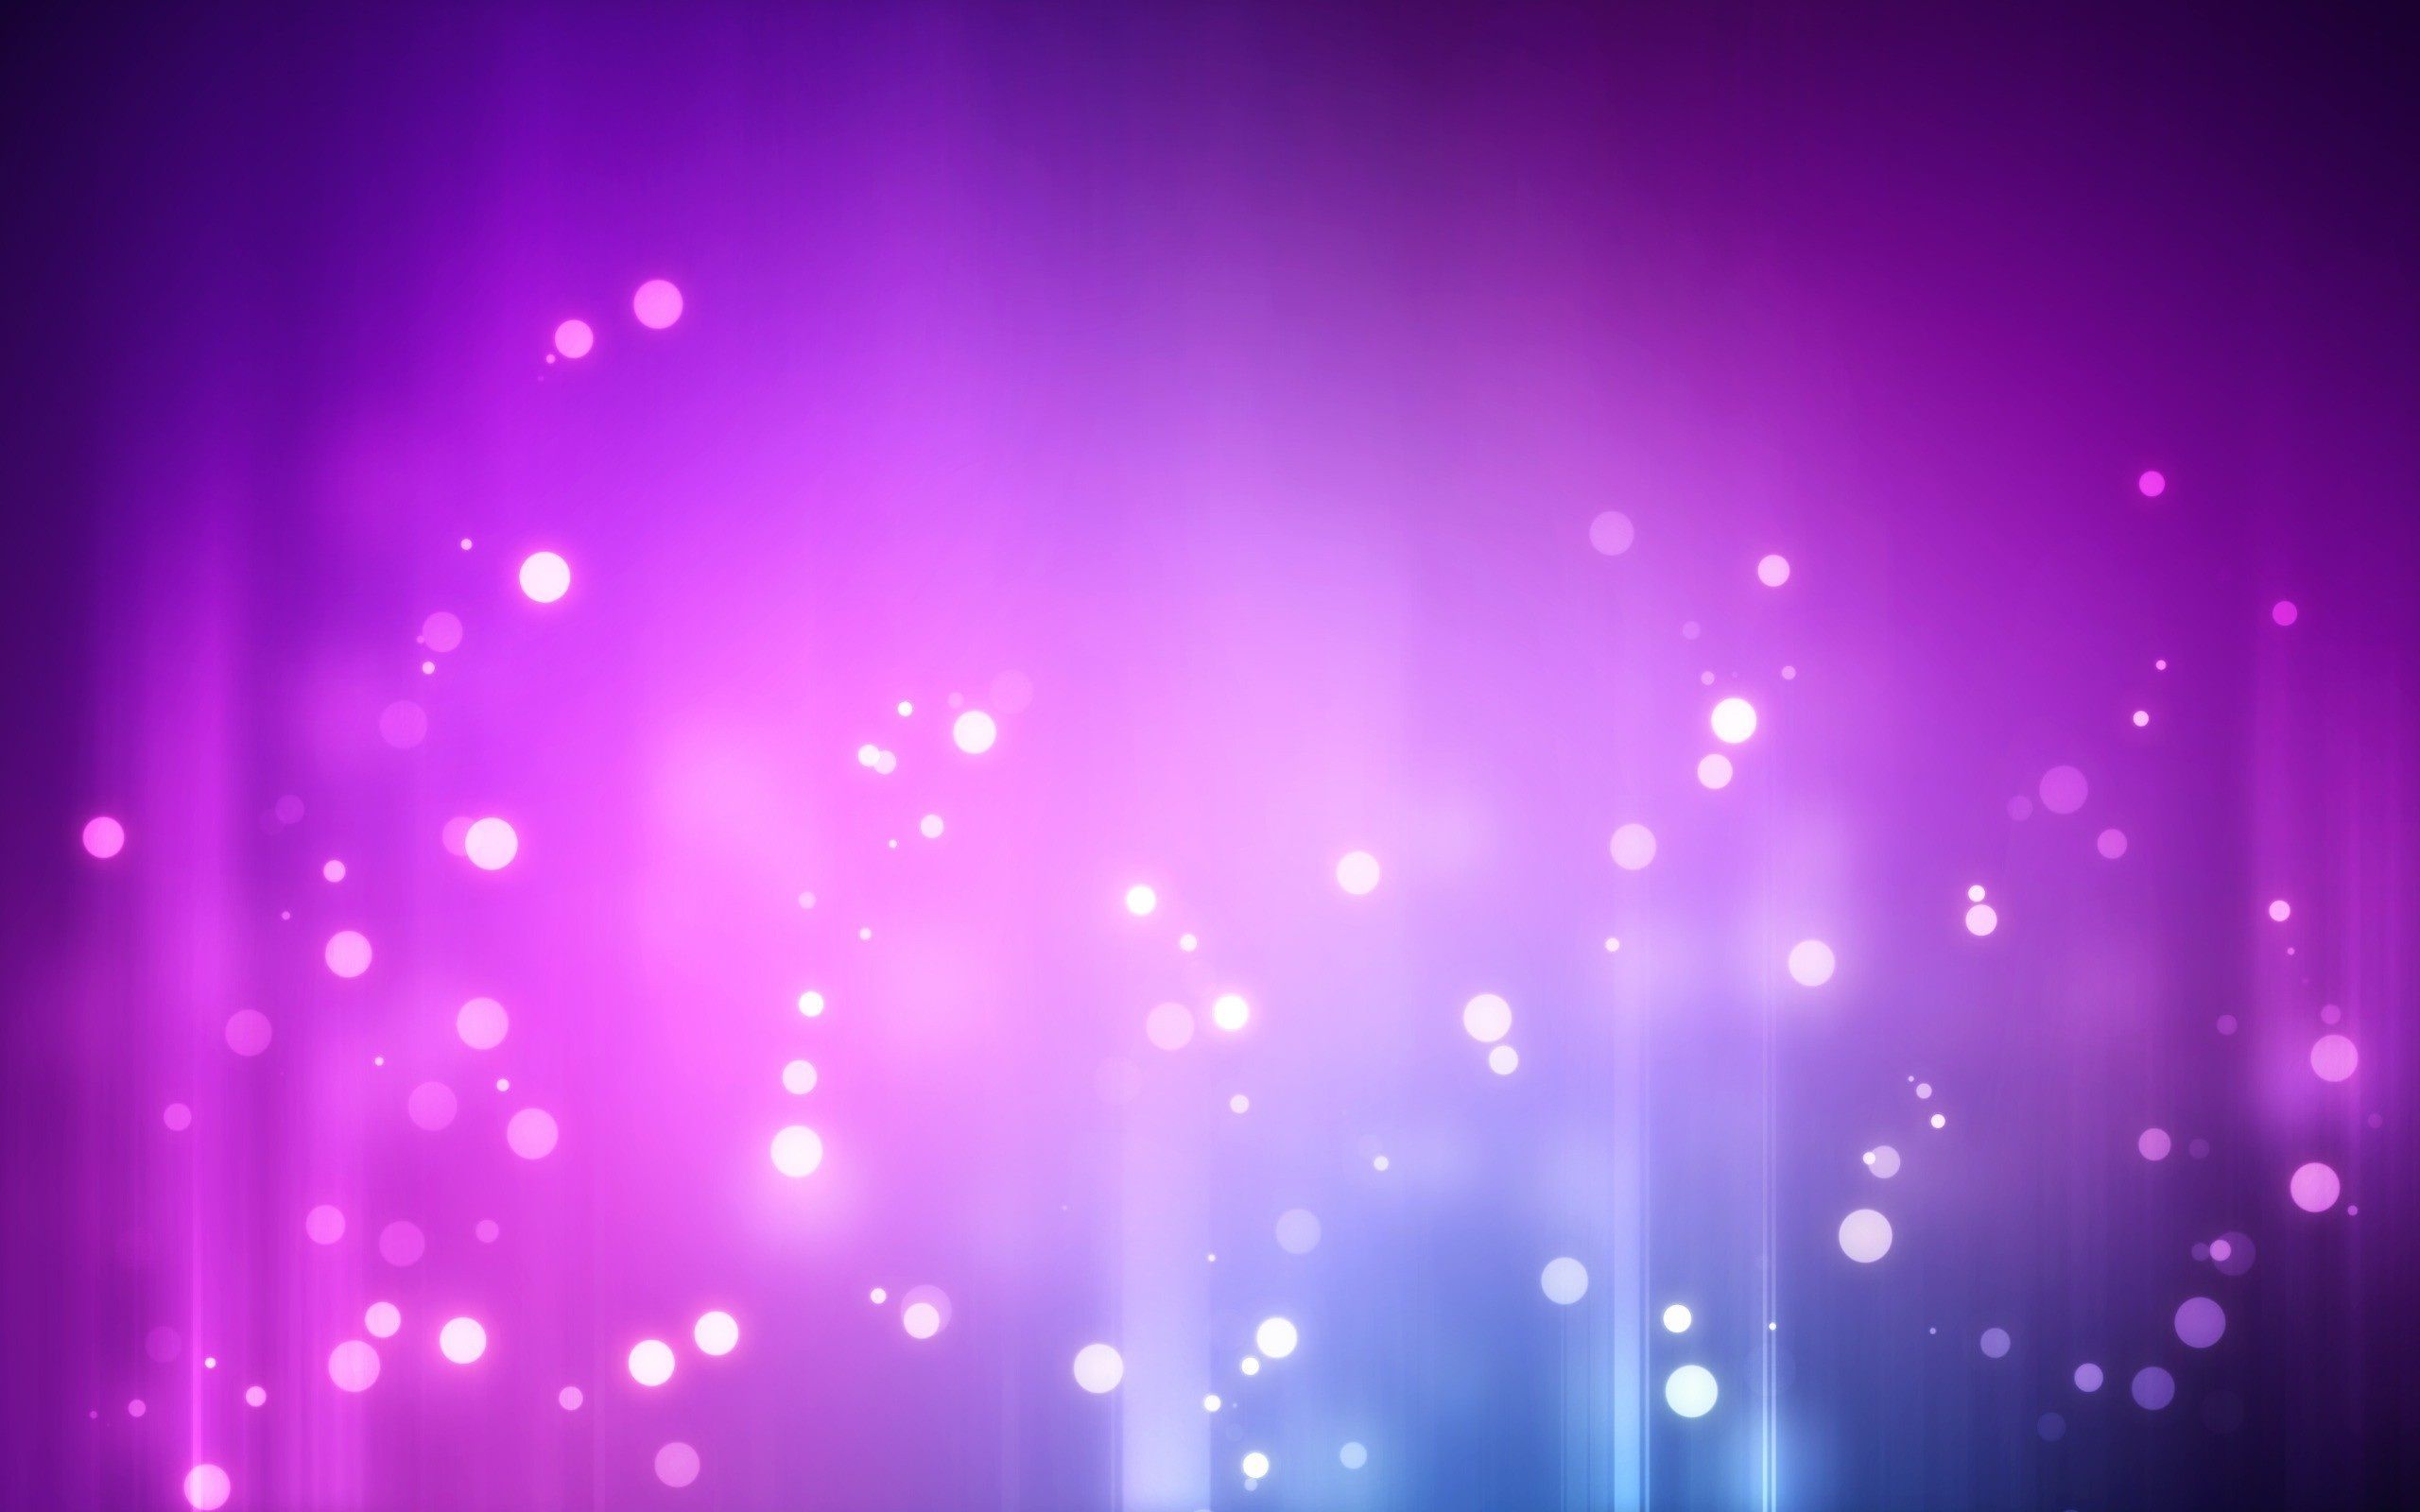 Light HD Wallpaper Pattern in Purple Bubble | HD Wallpapers for Free